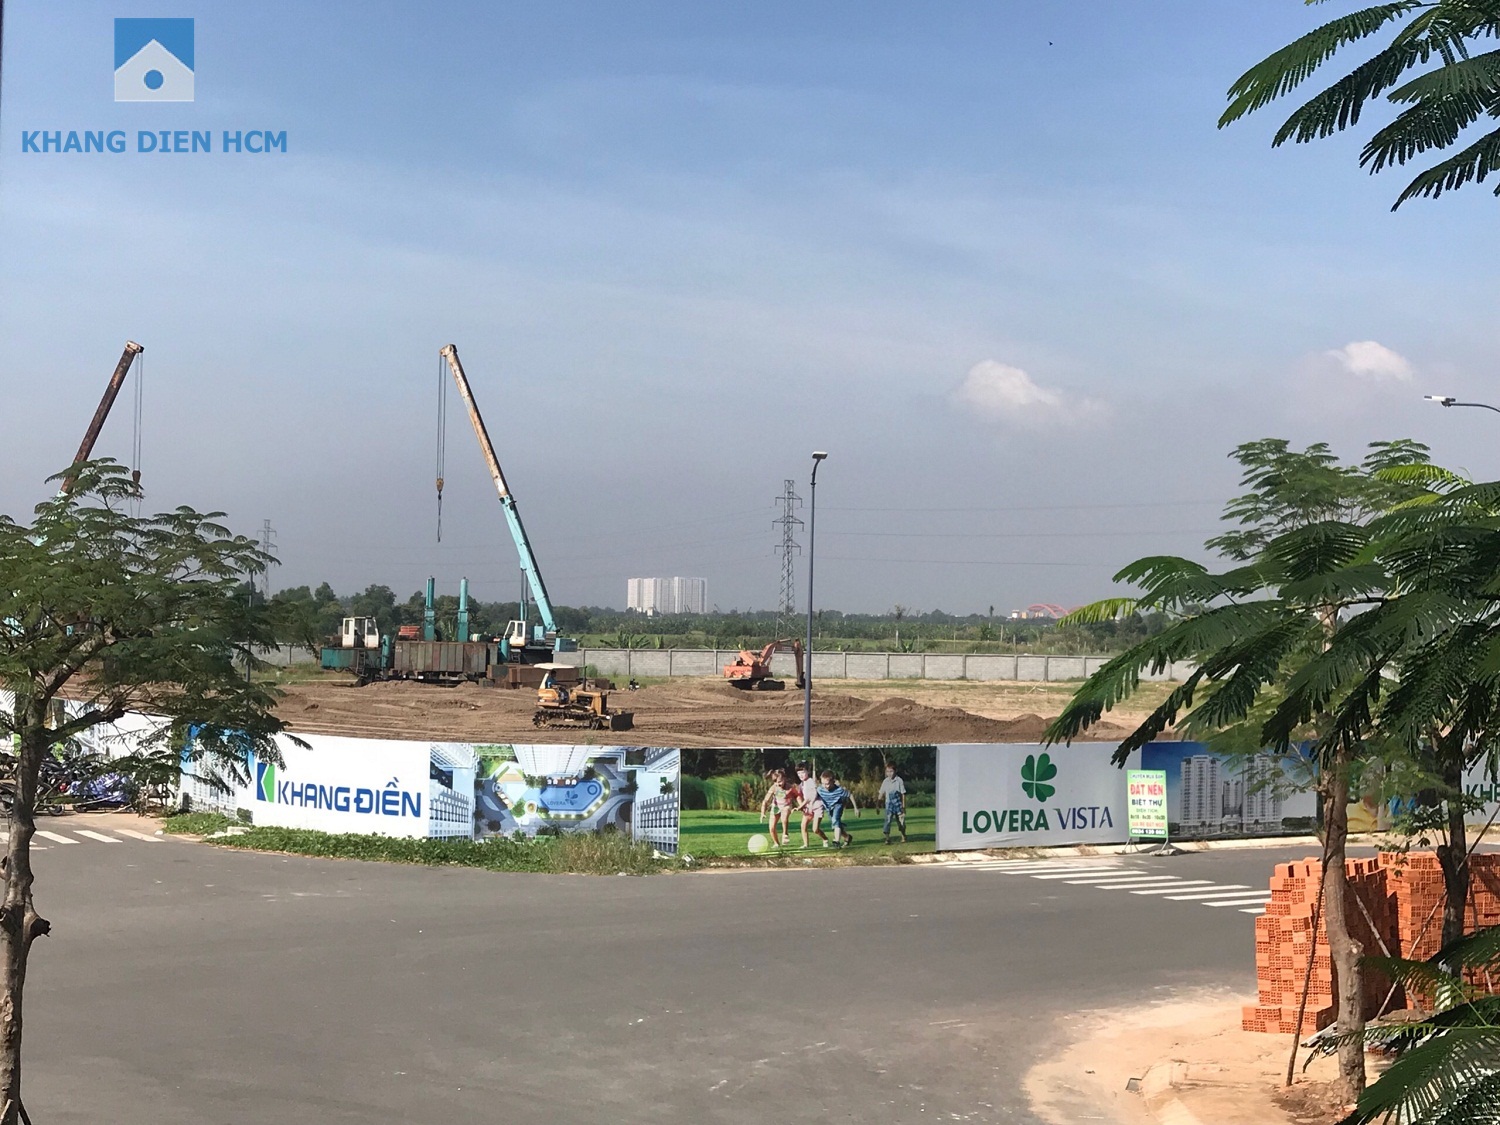 Được khởi công từ tháng 07/2018 hiện tại dự án đã xong ép cọc thử tải và đang tiến hành đổ đất để nâng nền của dự án - Khang Điền HCM